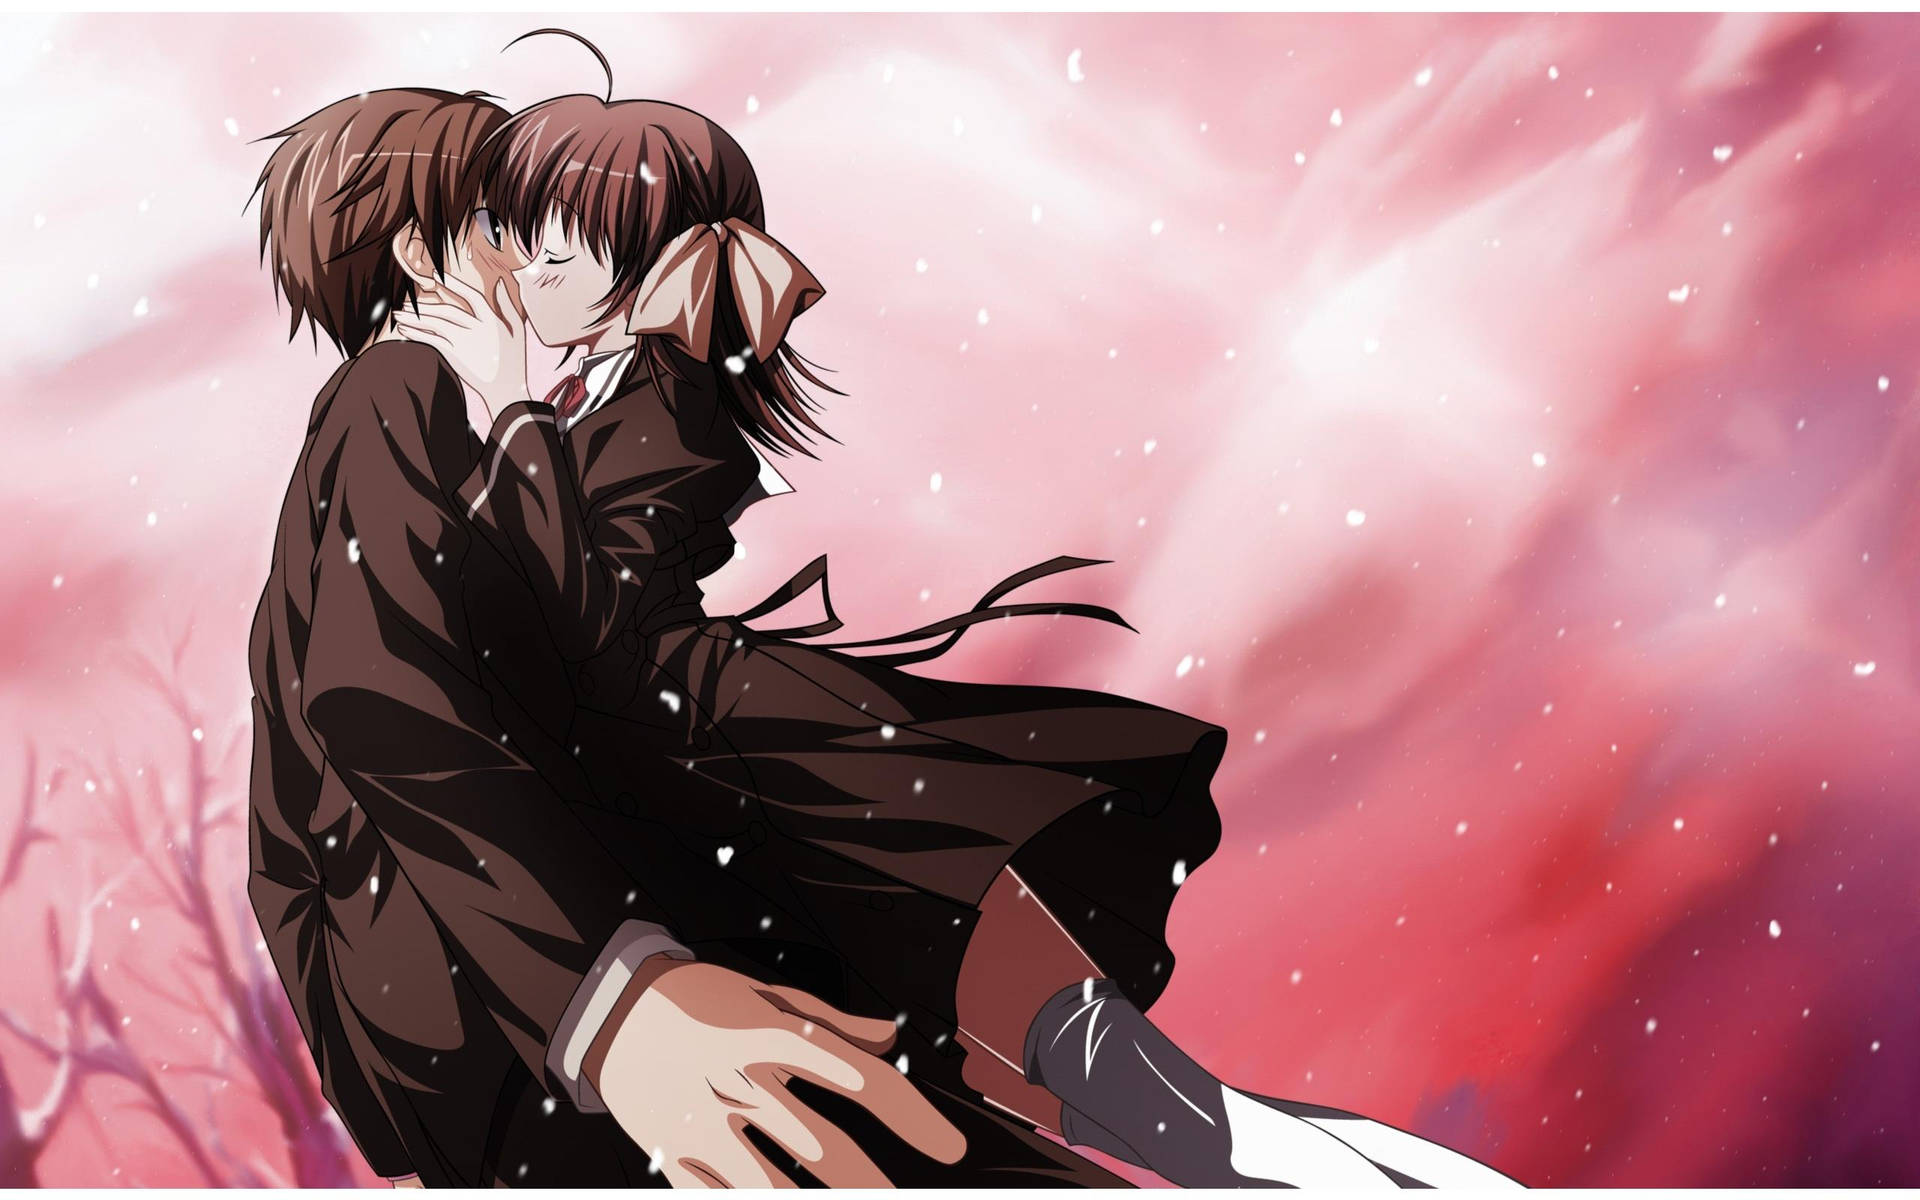 Miyako And Hiro Anime Couple Kiss Wallpaper